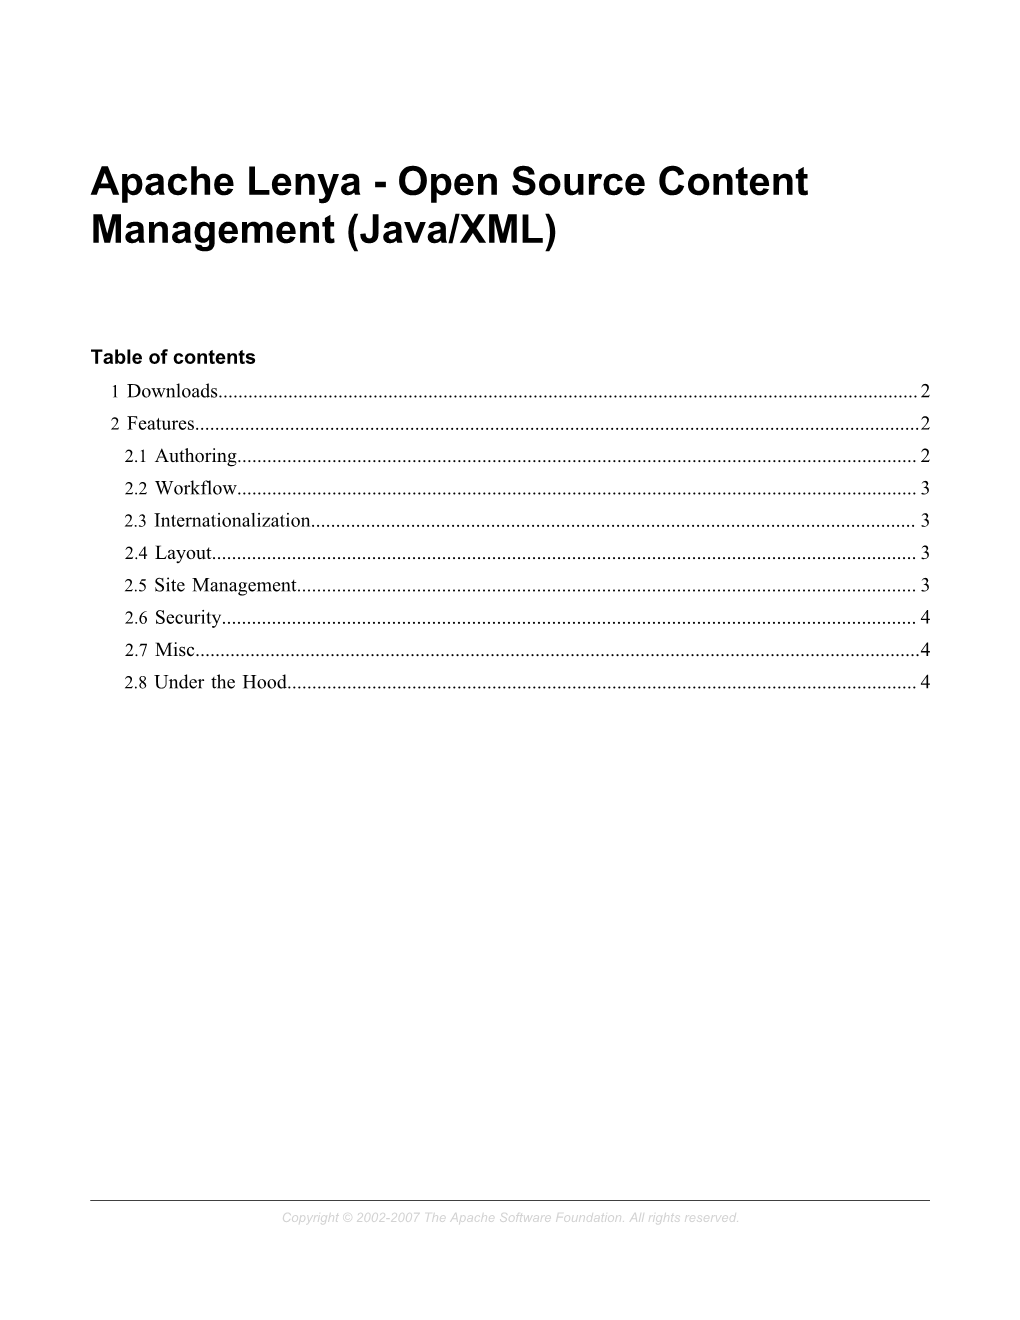 Apache Lenya - Open Source Content Management (Java/XML)